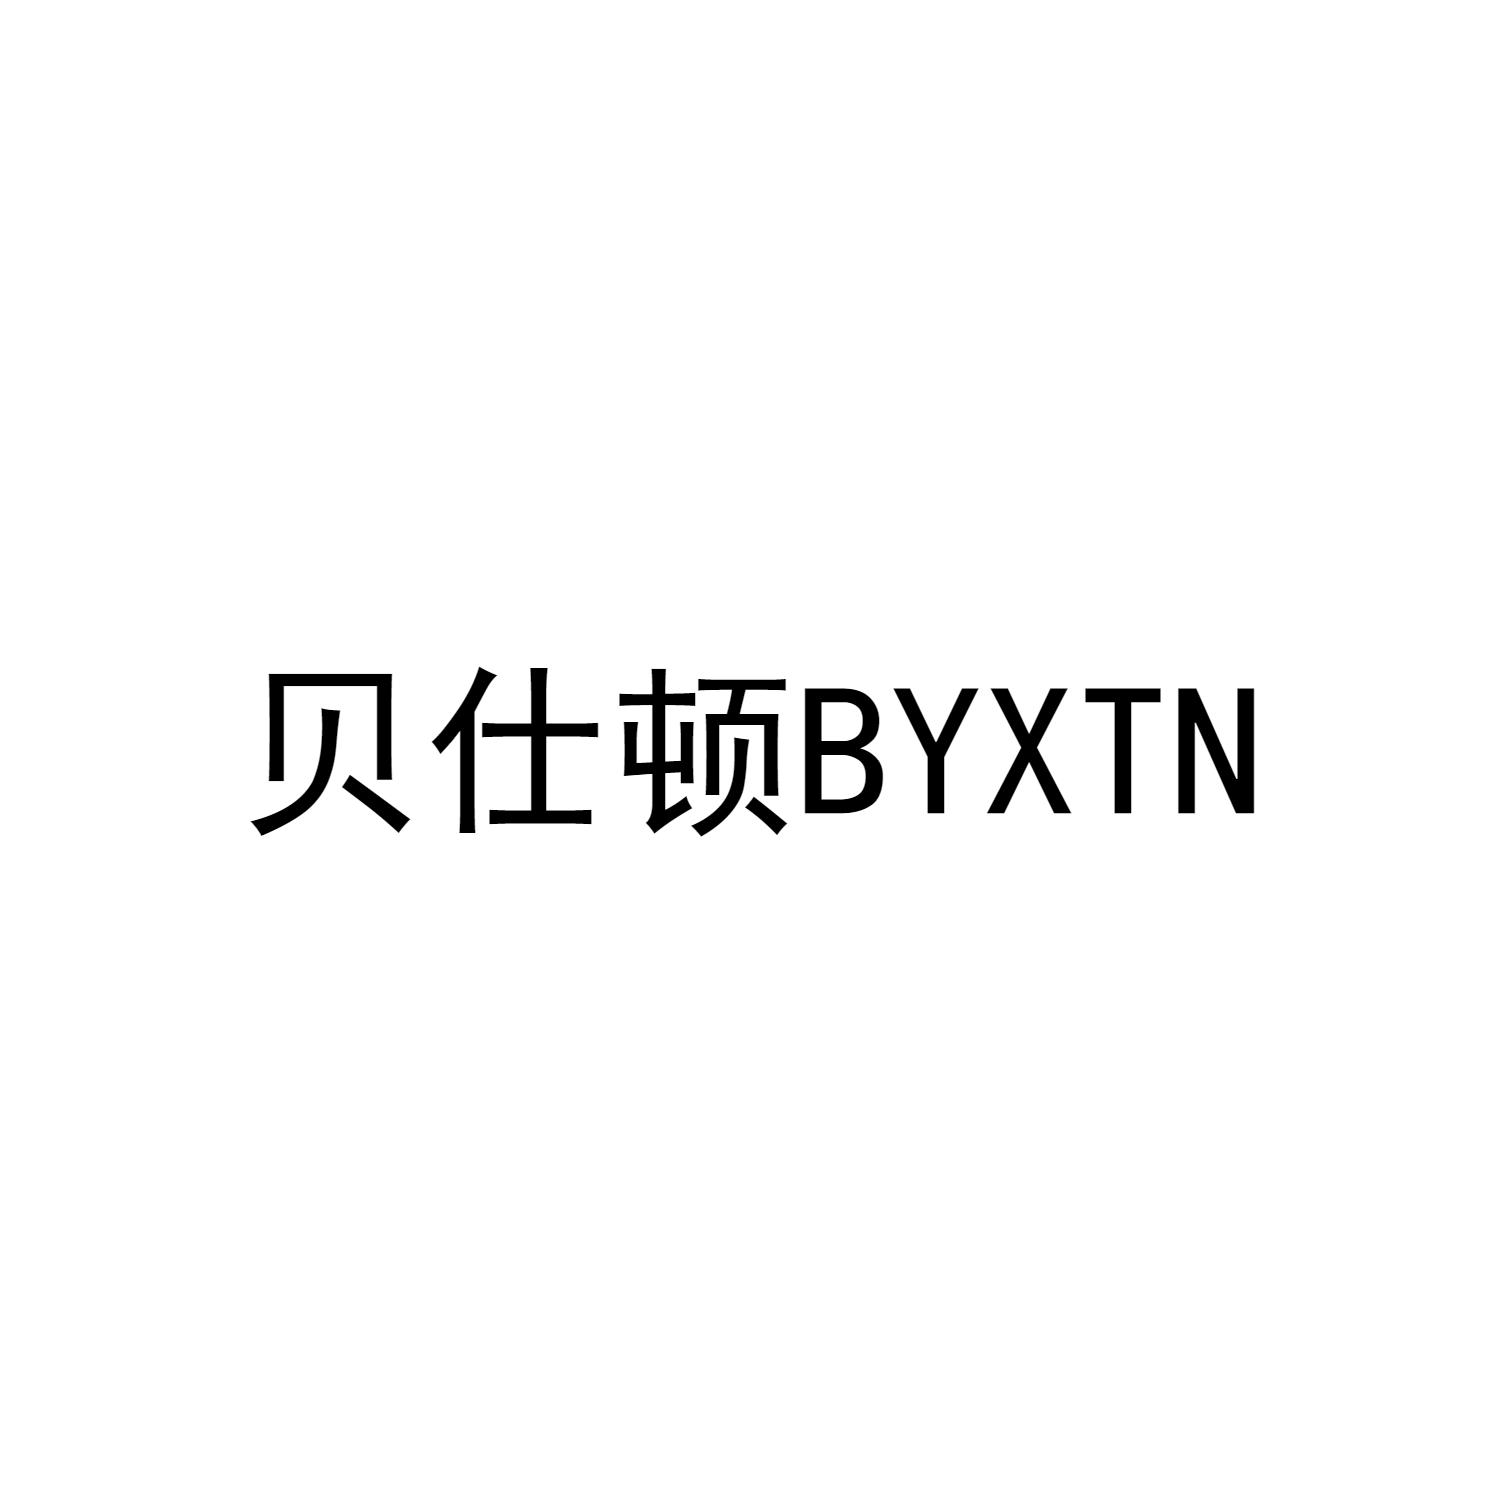 贝仕顿BYXTN